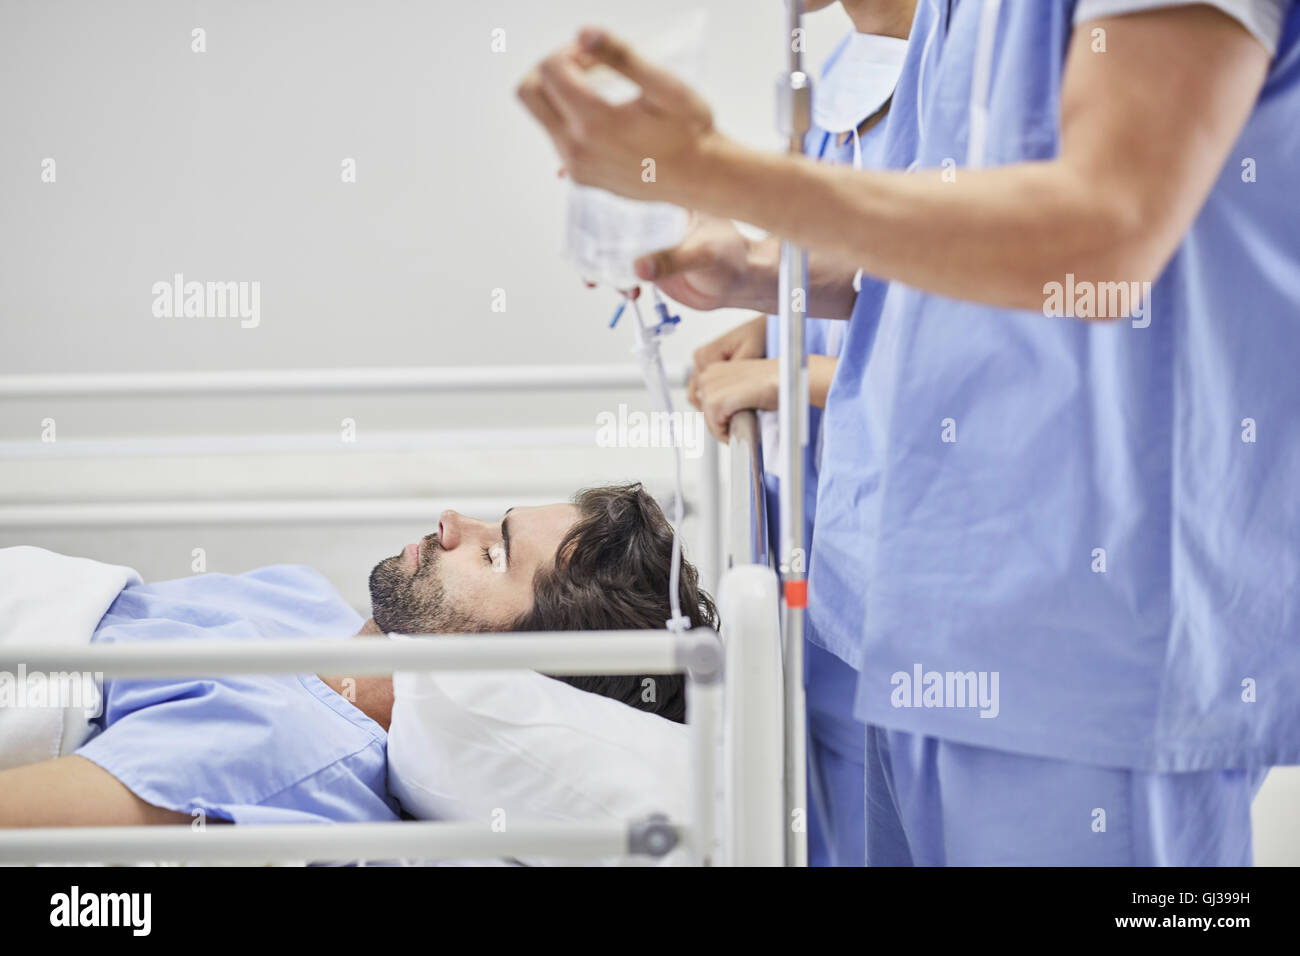 Arzt eine medizinische Behandlung für Patienten am Krankenbett Stockfoto